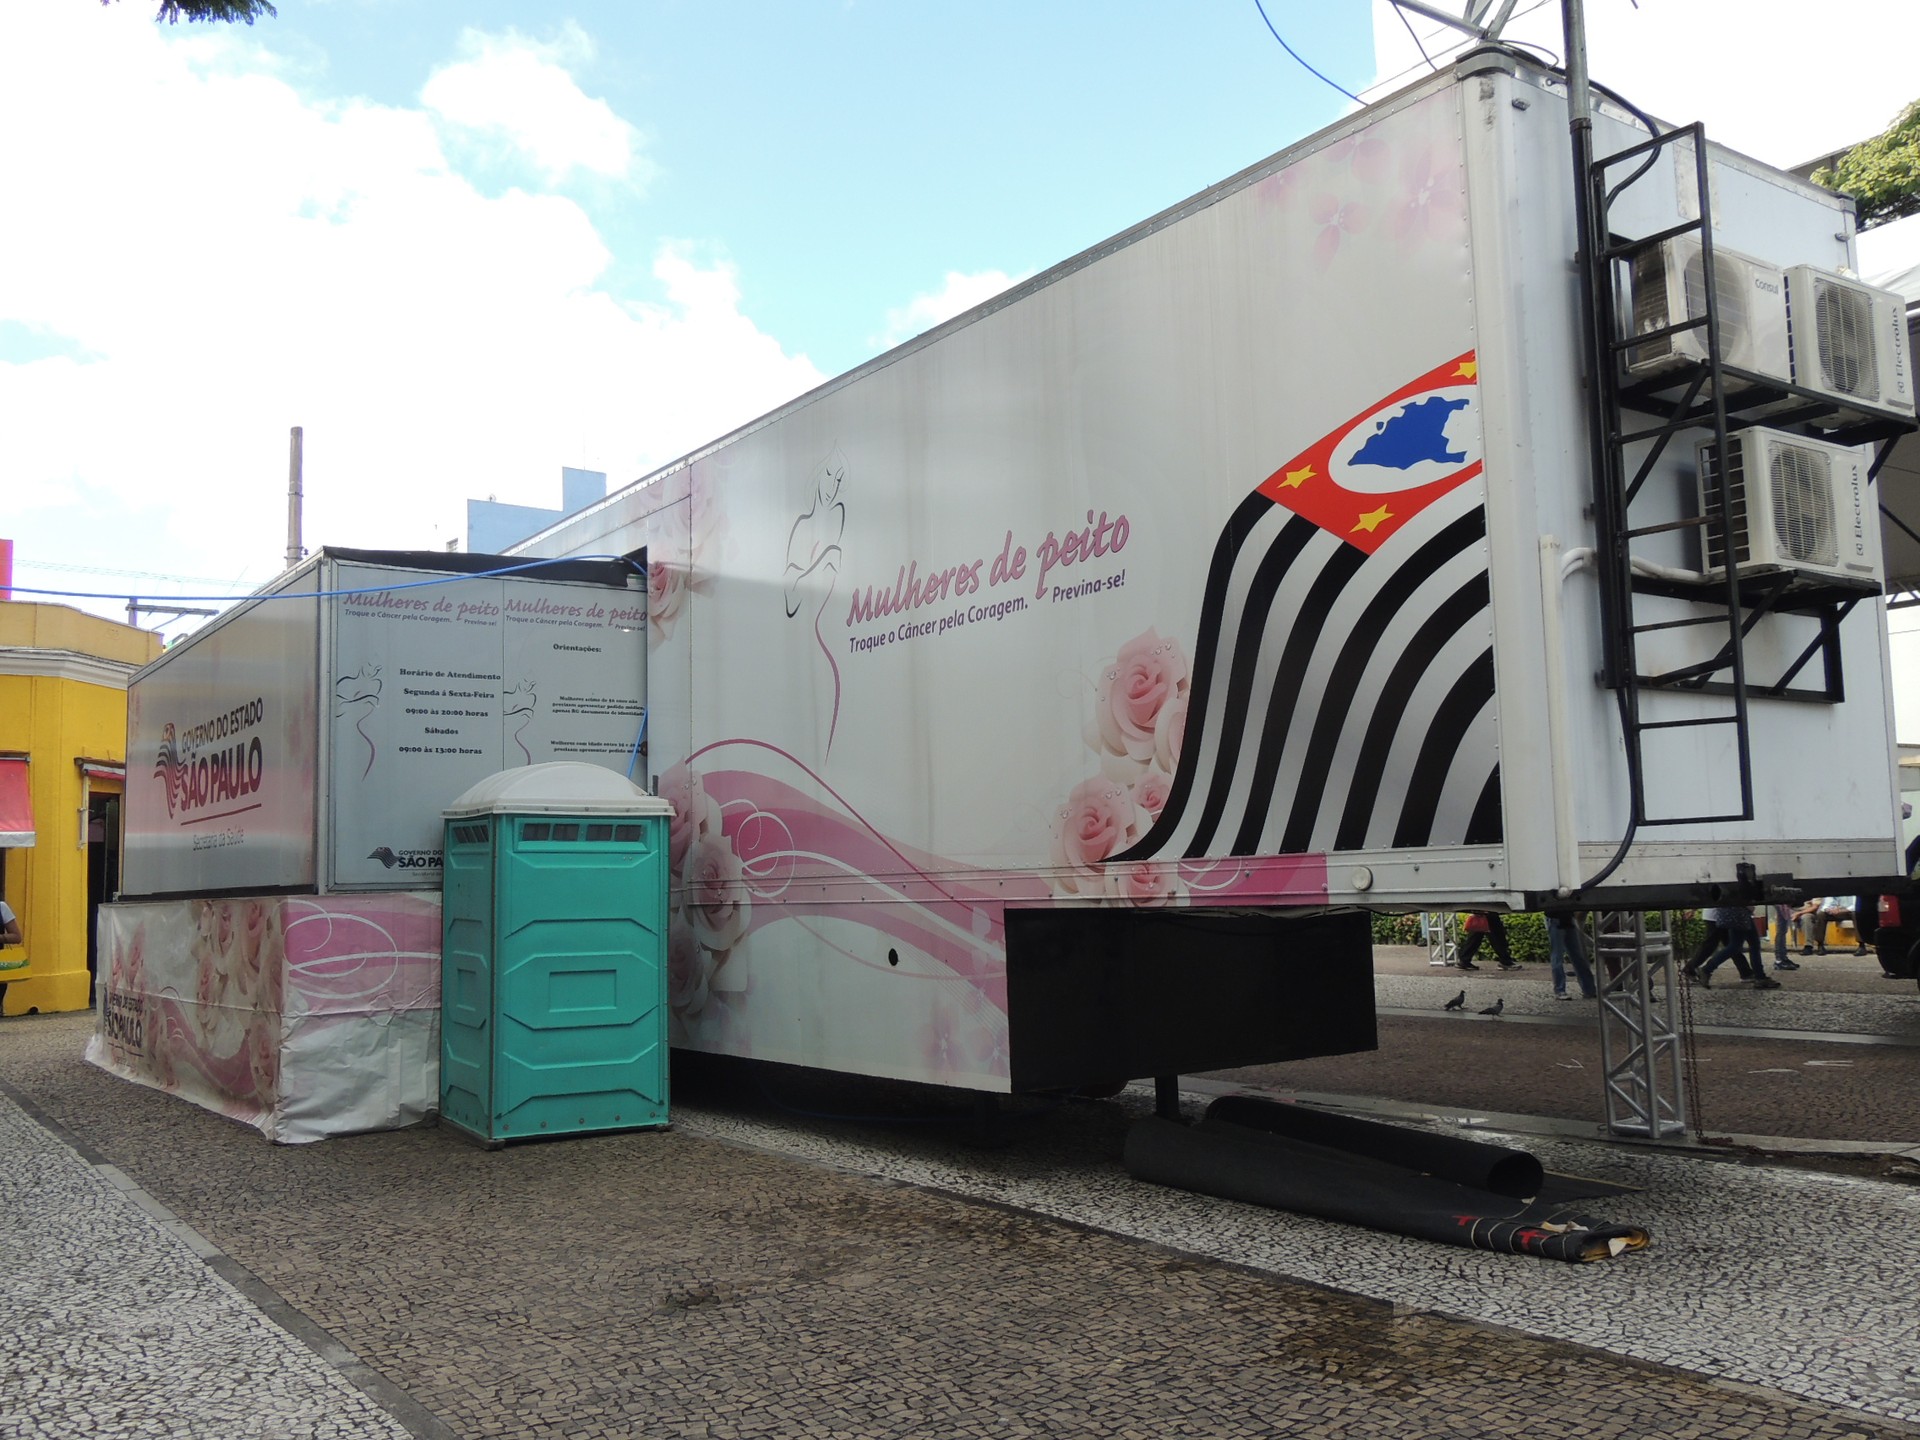 Carreta leva mamografia gratuita para Guararema a partir de terça-feira